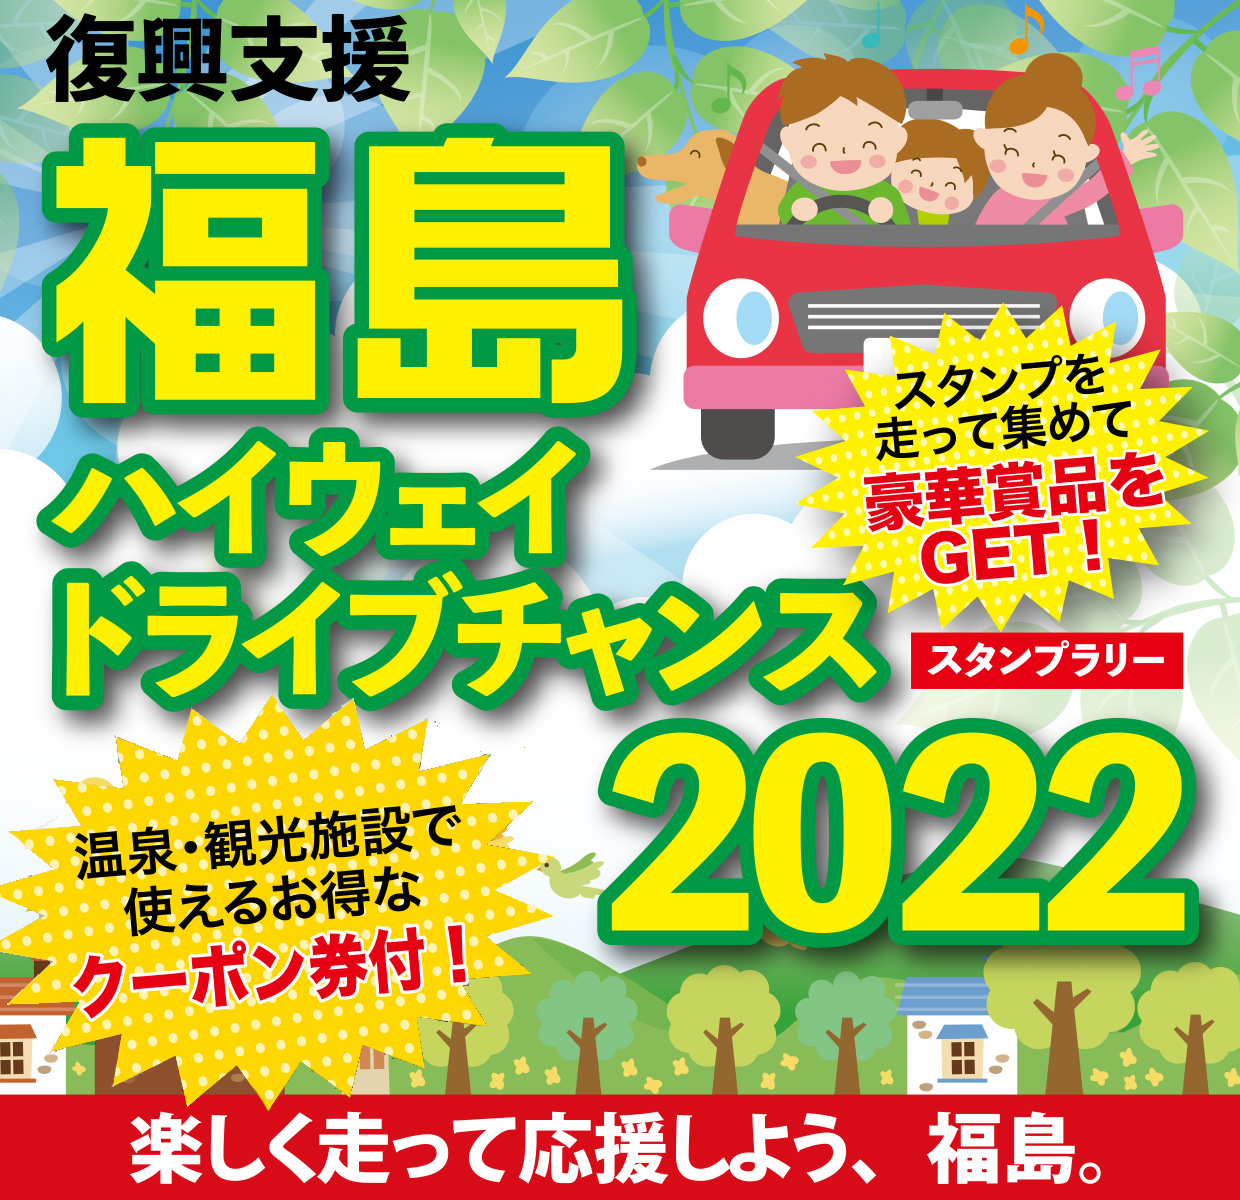 復興支援 福島ハイウェイドライブチャンス2022のイメージ画像